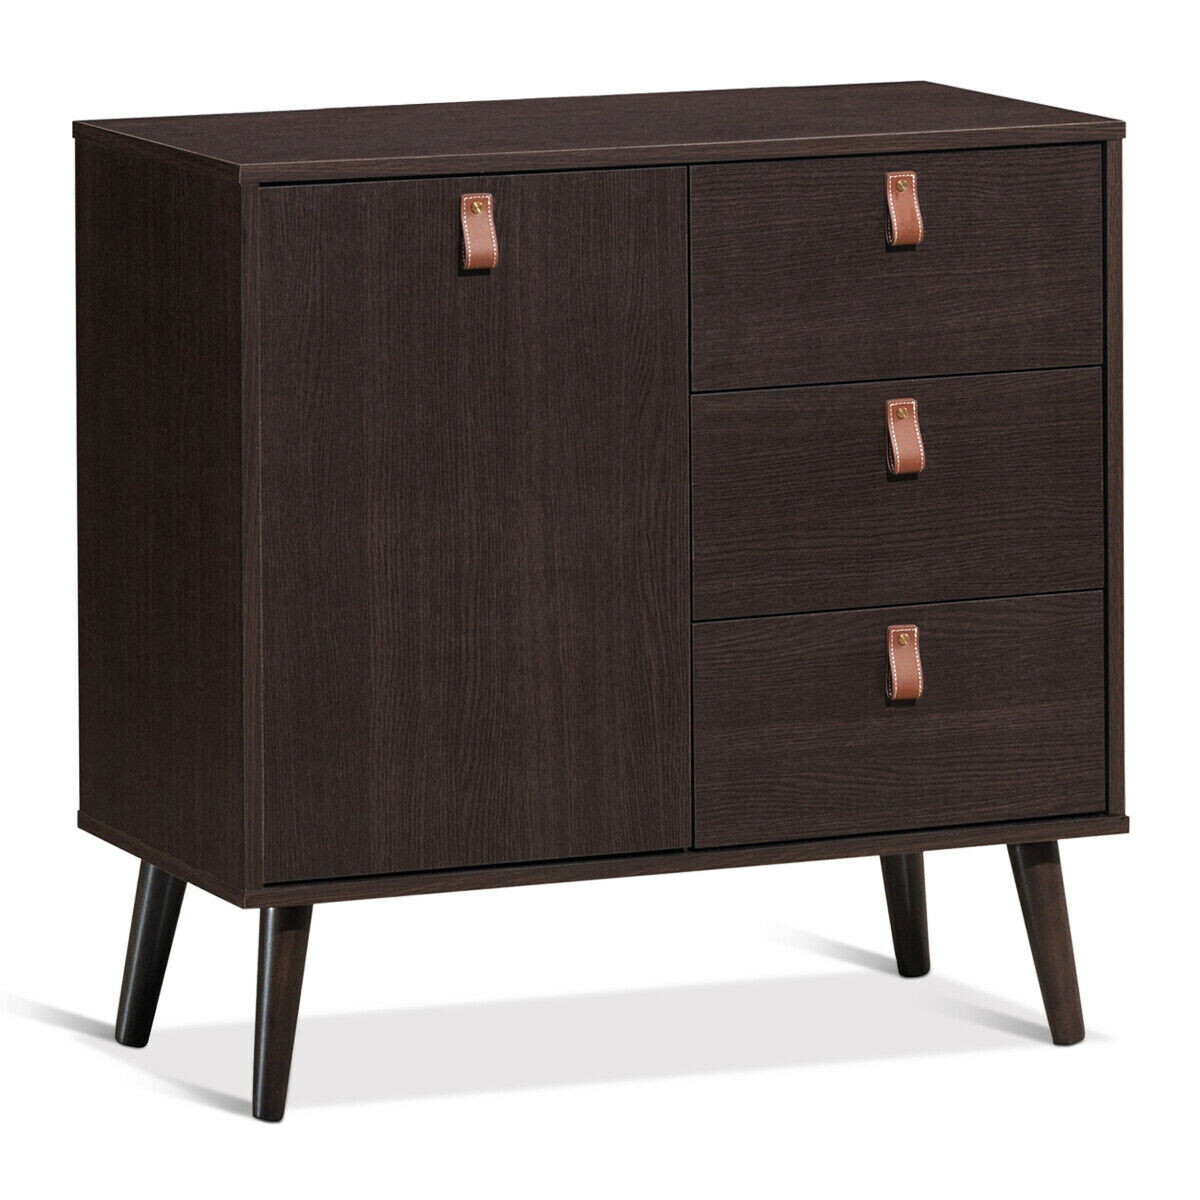 3-drawer Sideboard Storage Display Cabinet-Brown - Color: Brown